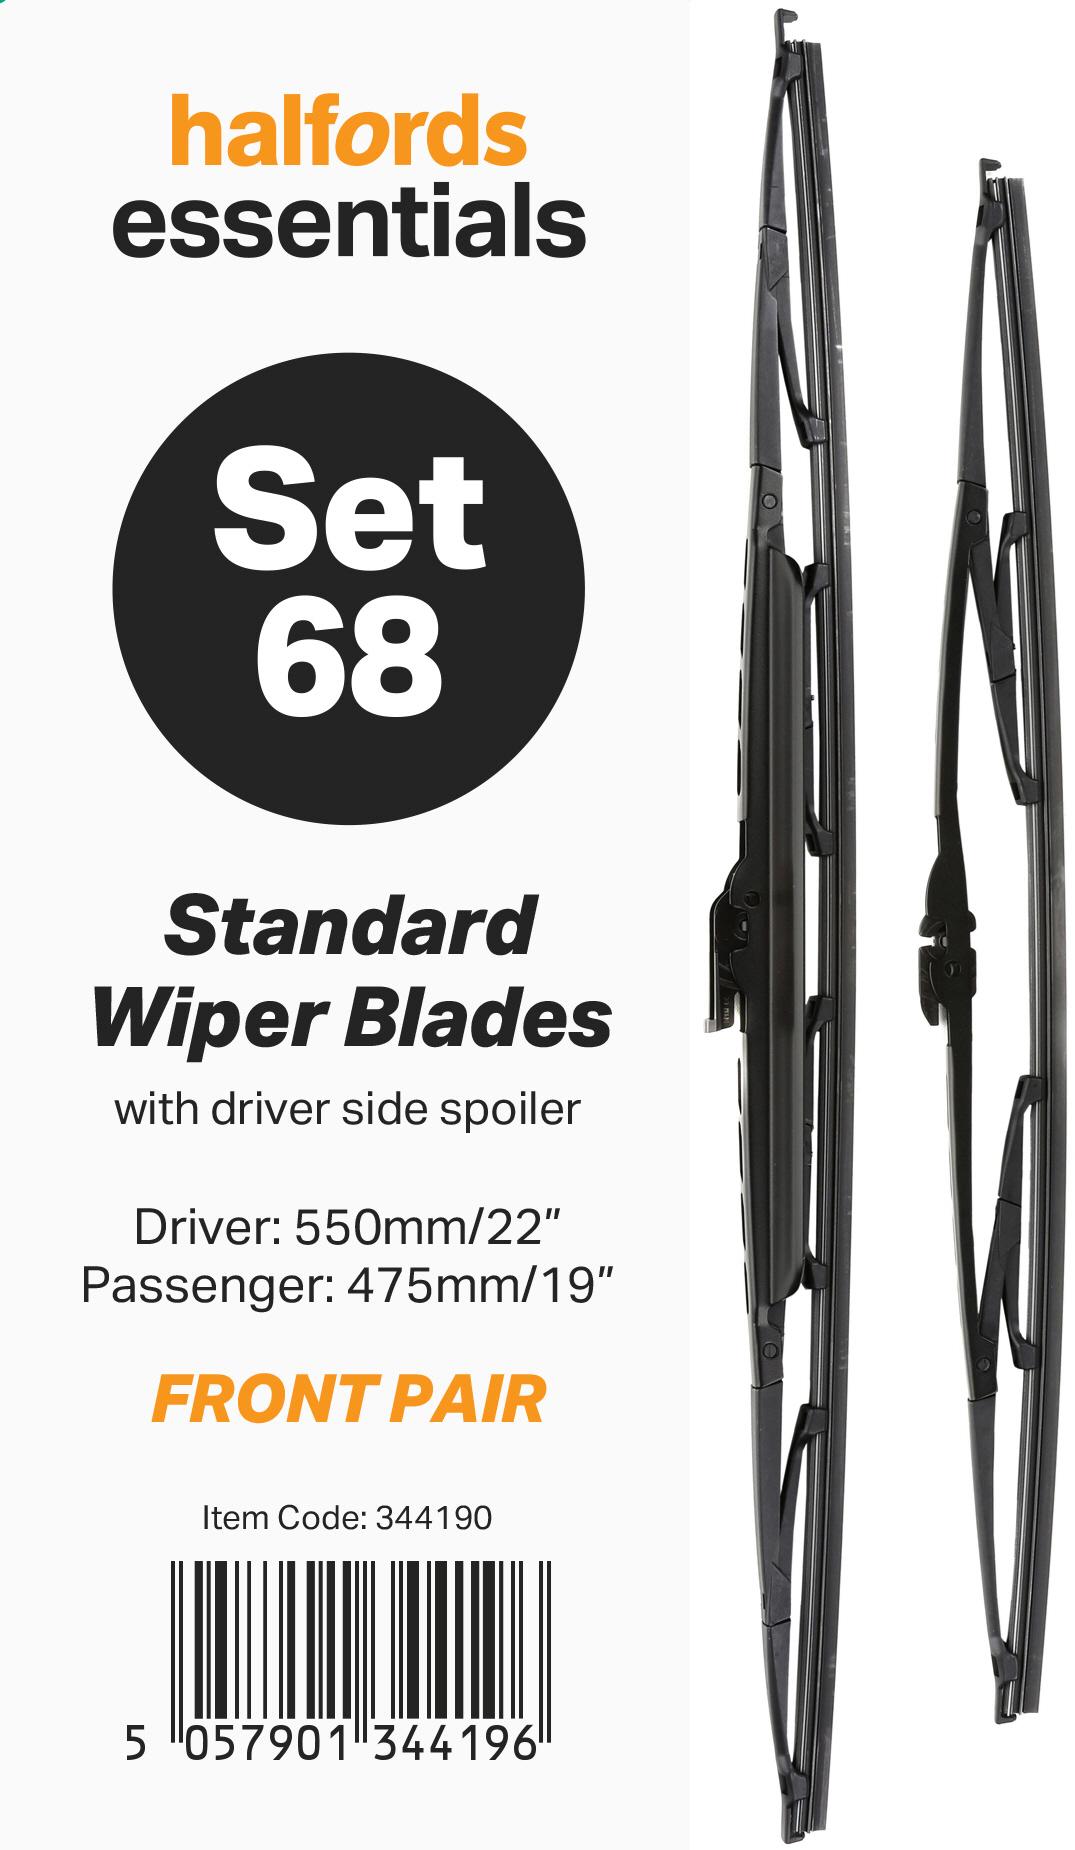 Halfords Essentials Wiper Blade Set 68